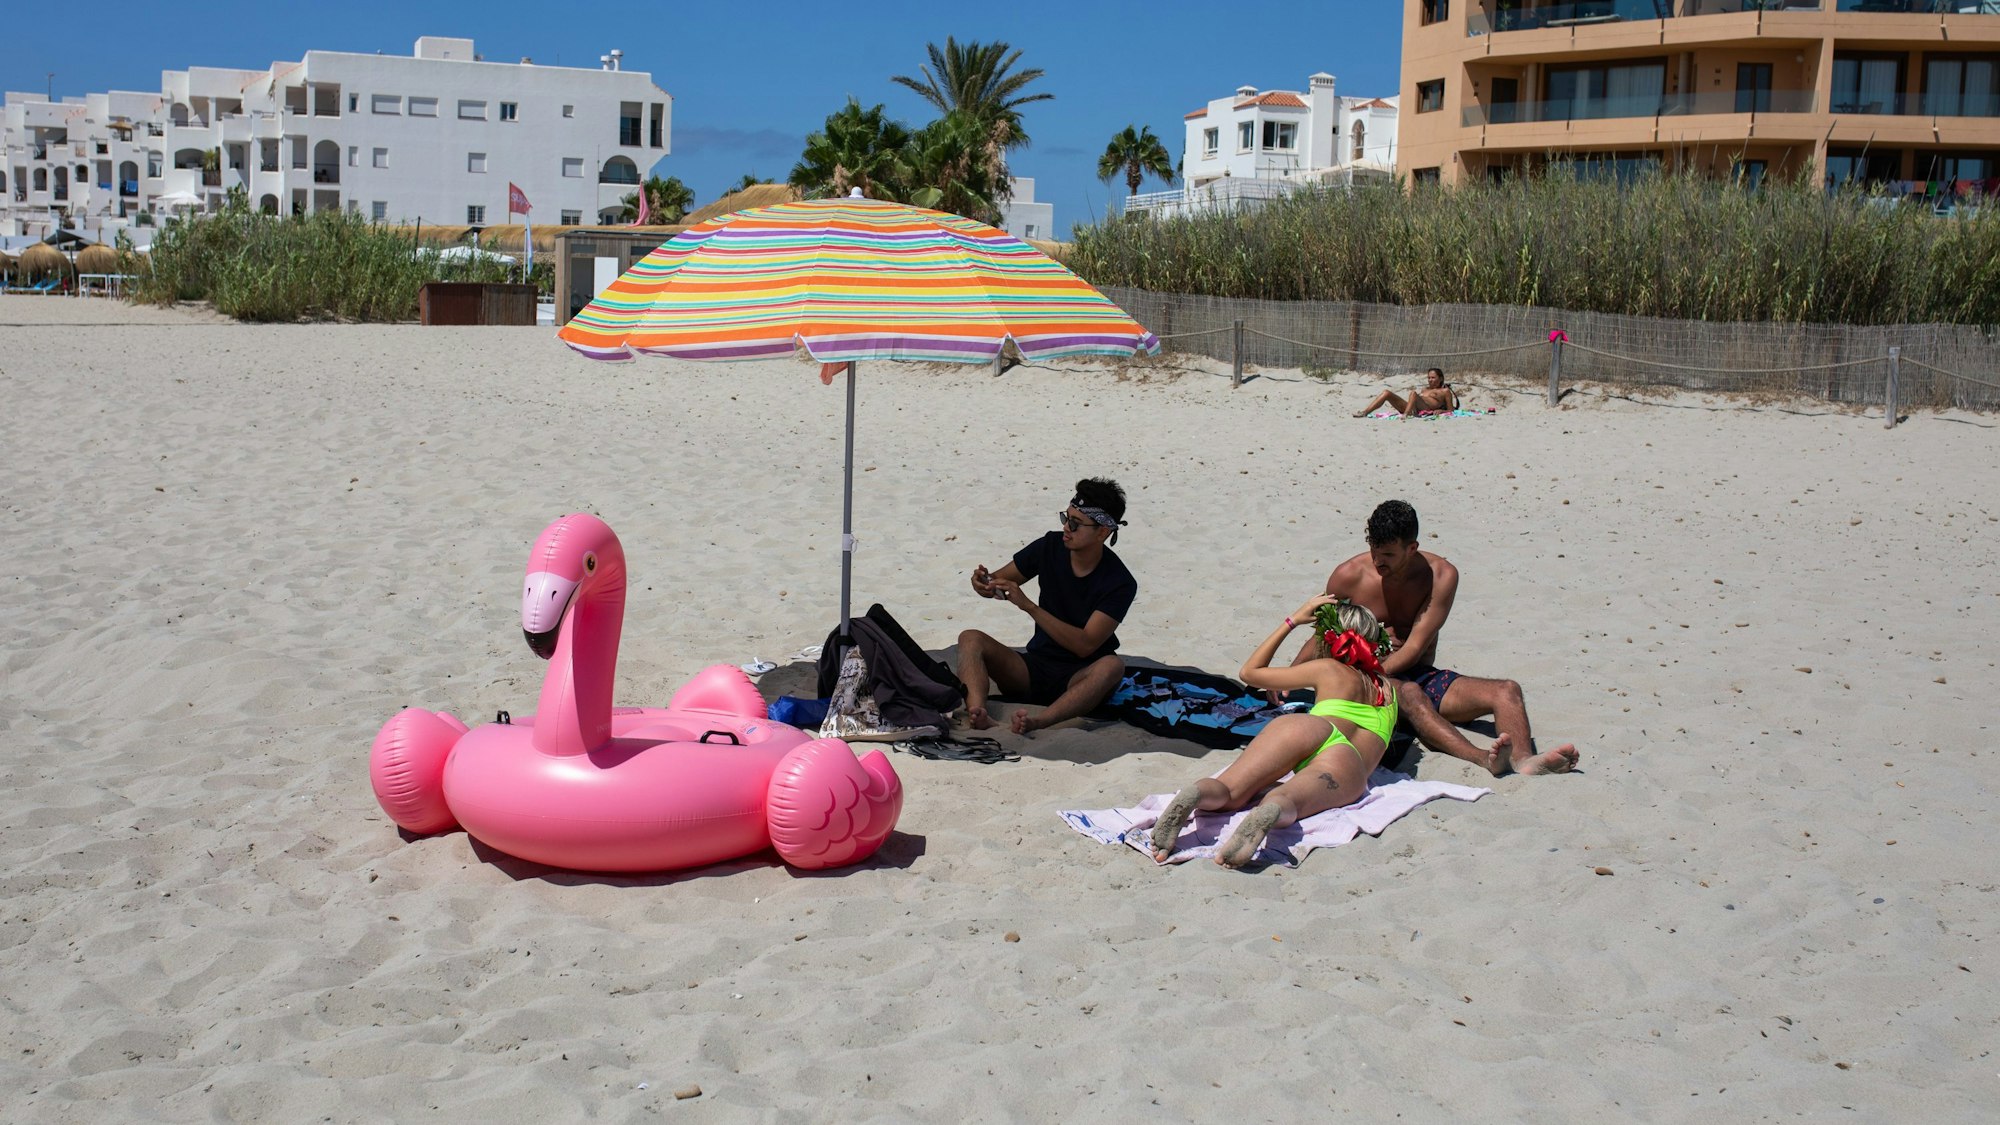 Junge Briten genießen Mitte Juli den Bossa Beach auf Ibiza: Ein junger Brite verlor auf der Urlaubsinsel zwei seiner Finger, nachdem er am Abend von einer Spinne gebissen wurde.